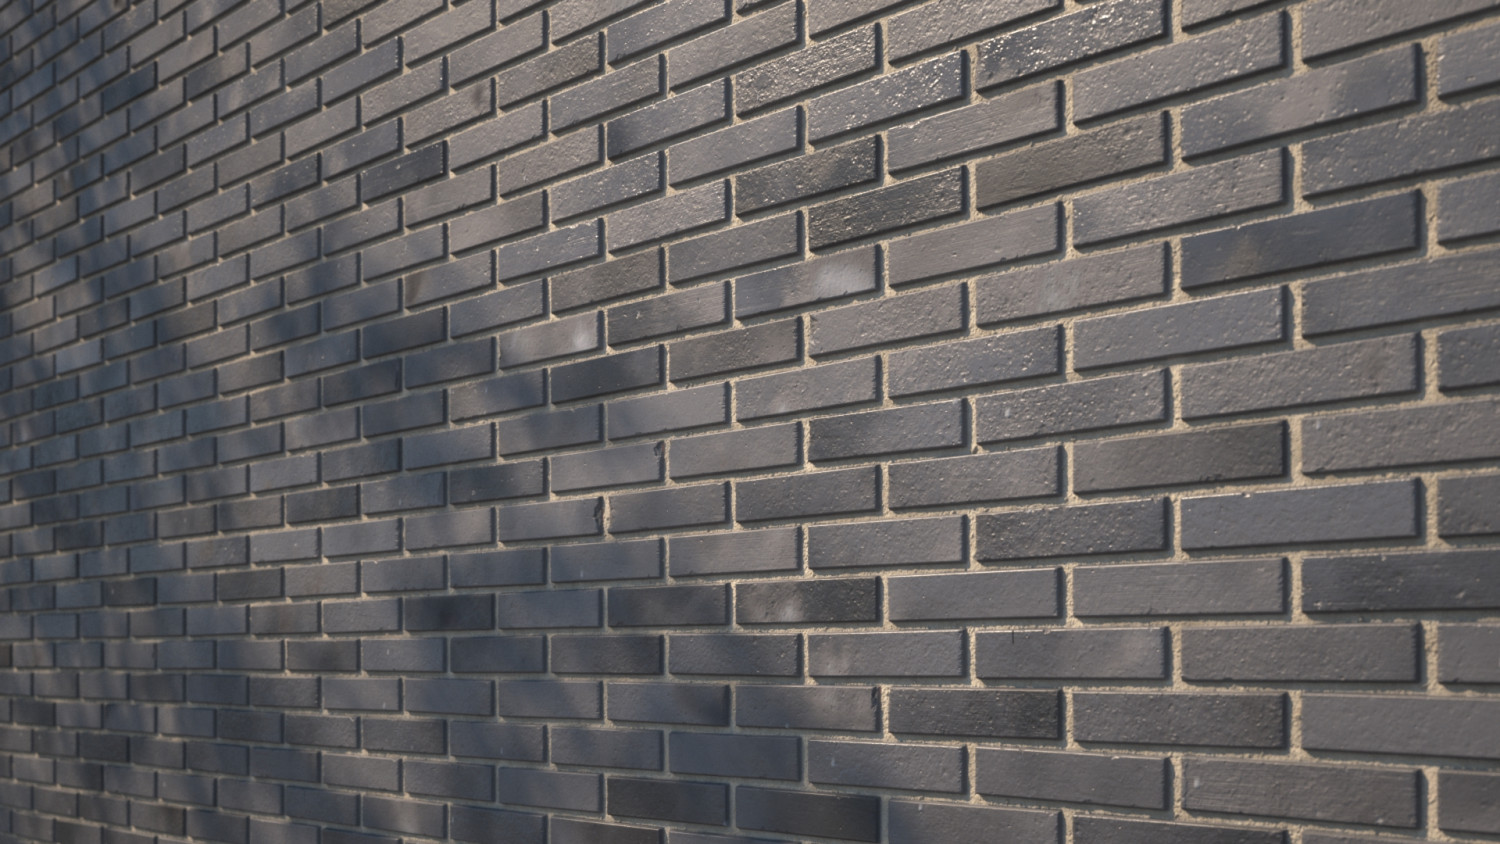 Dark clinker brick texture